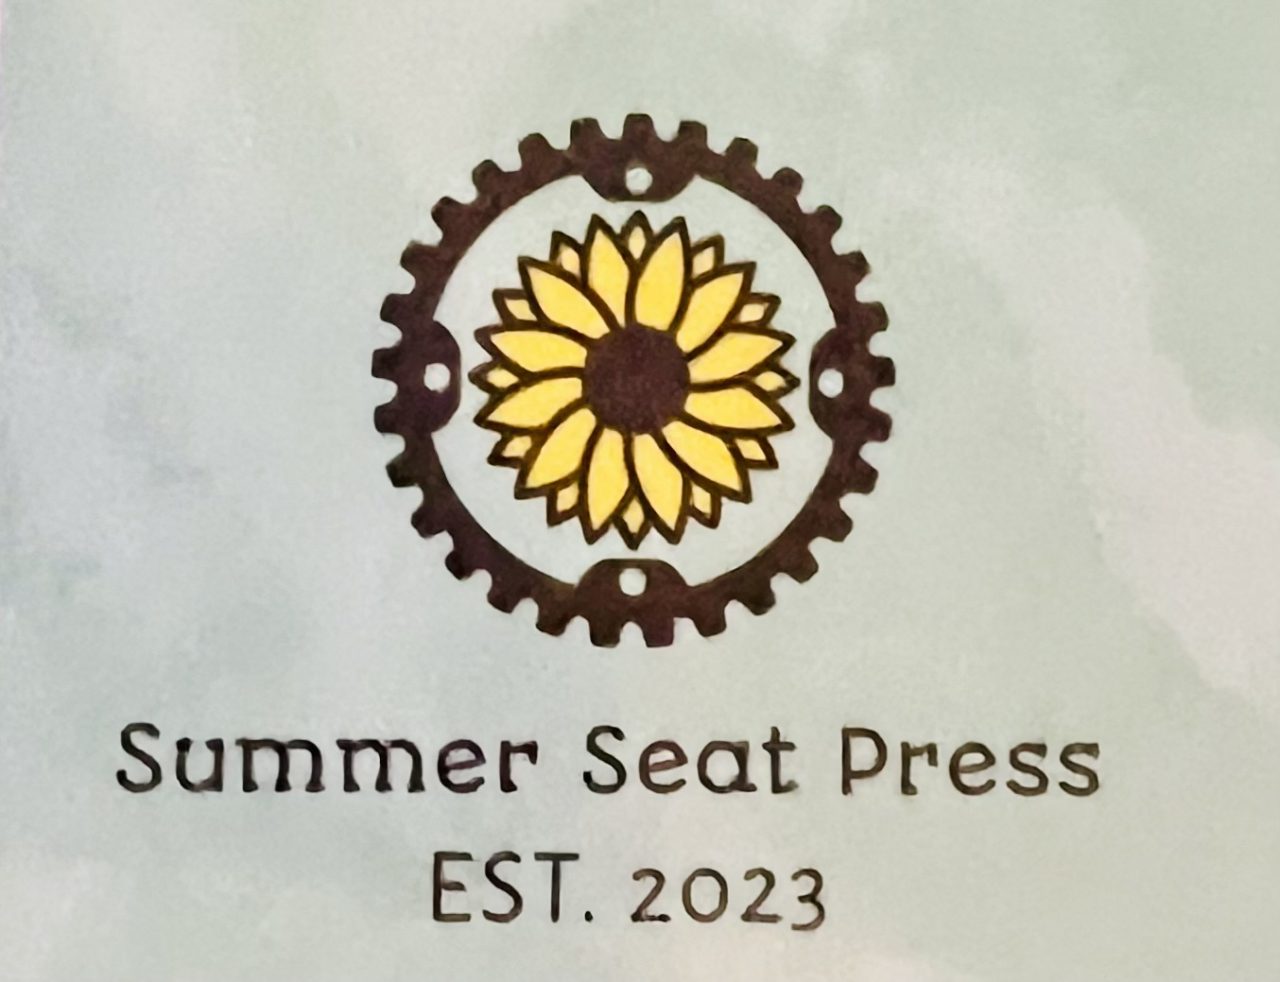 Summer Seat Press Ltd